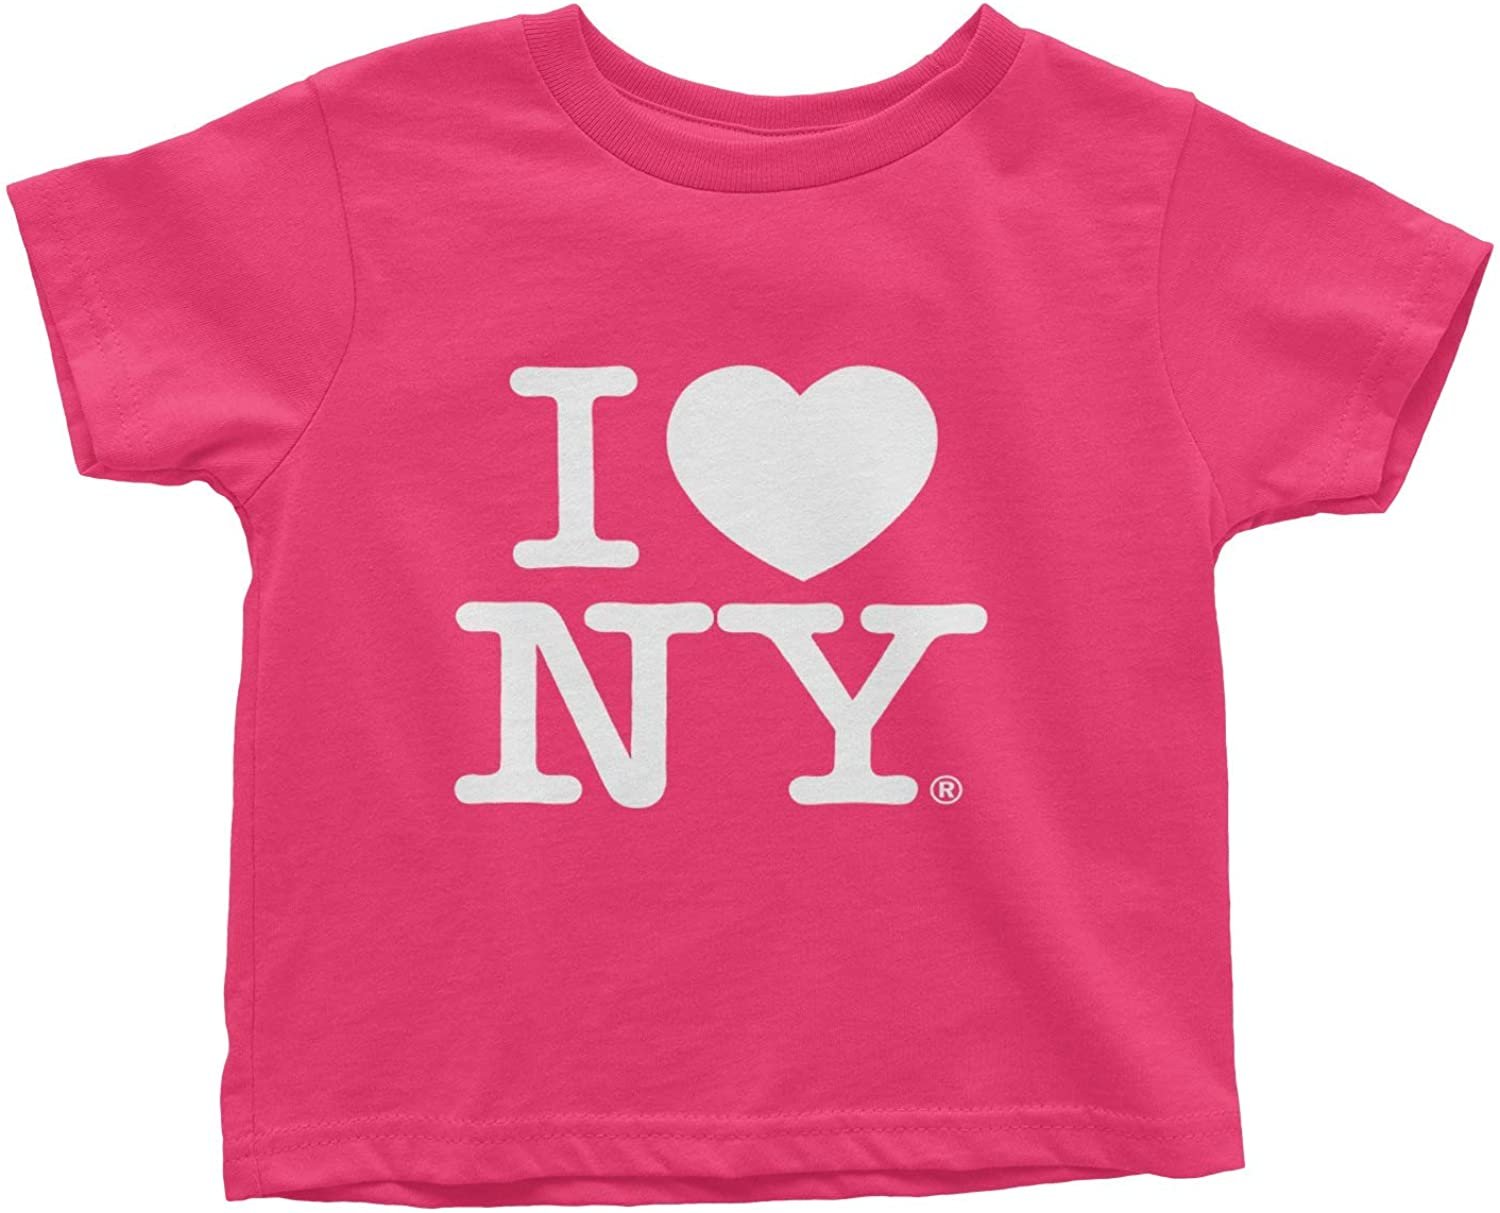 I Love NY Baby Tee Hot Pink